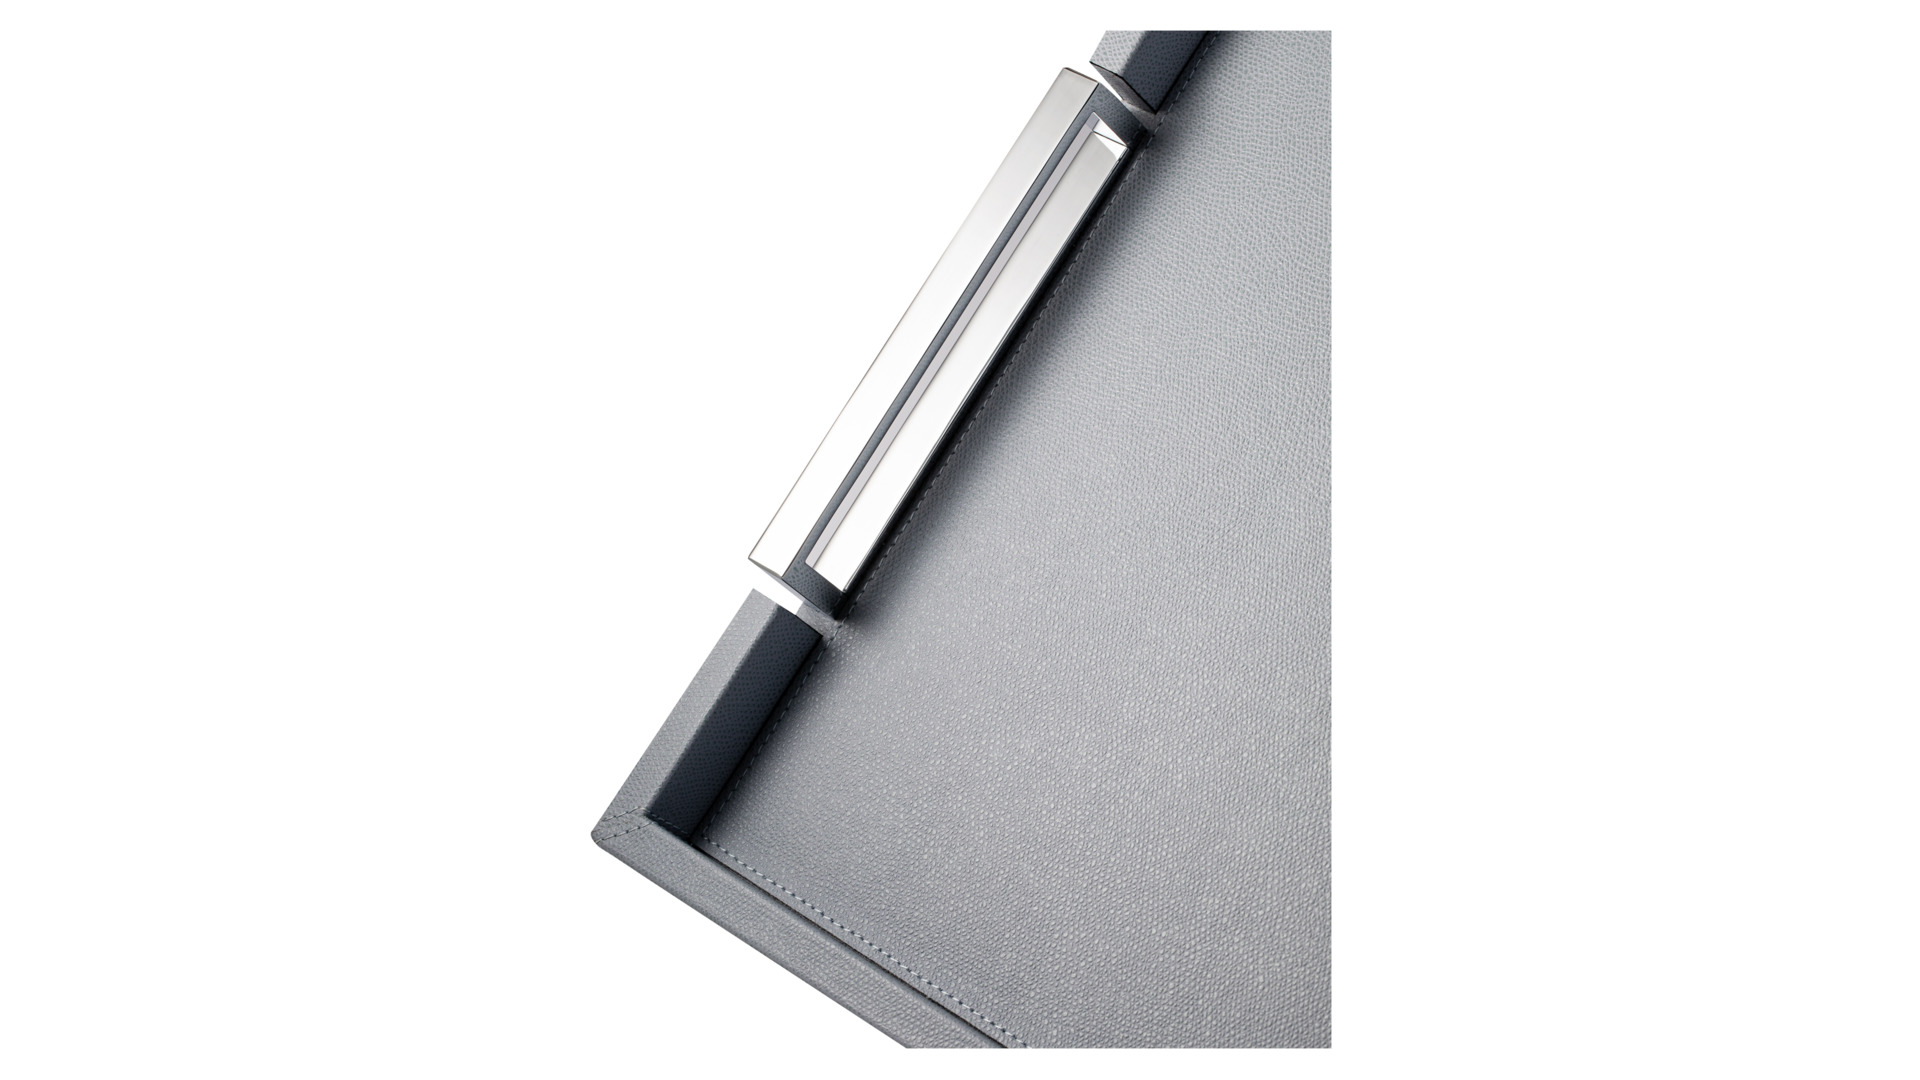 Поднос прямоугольный с ручками Giobagnara Виктор 44,5х34,5см, липово-серый